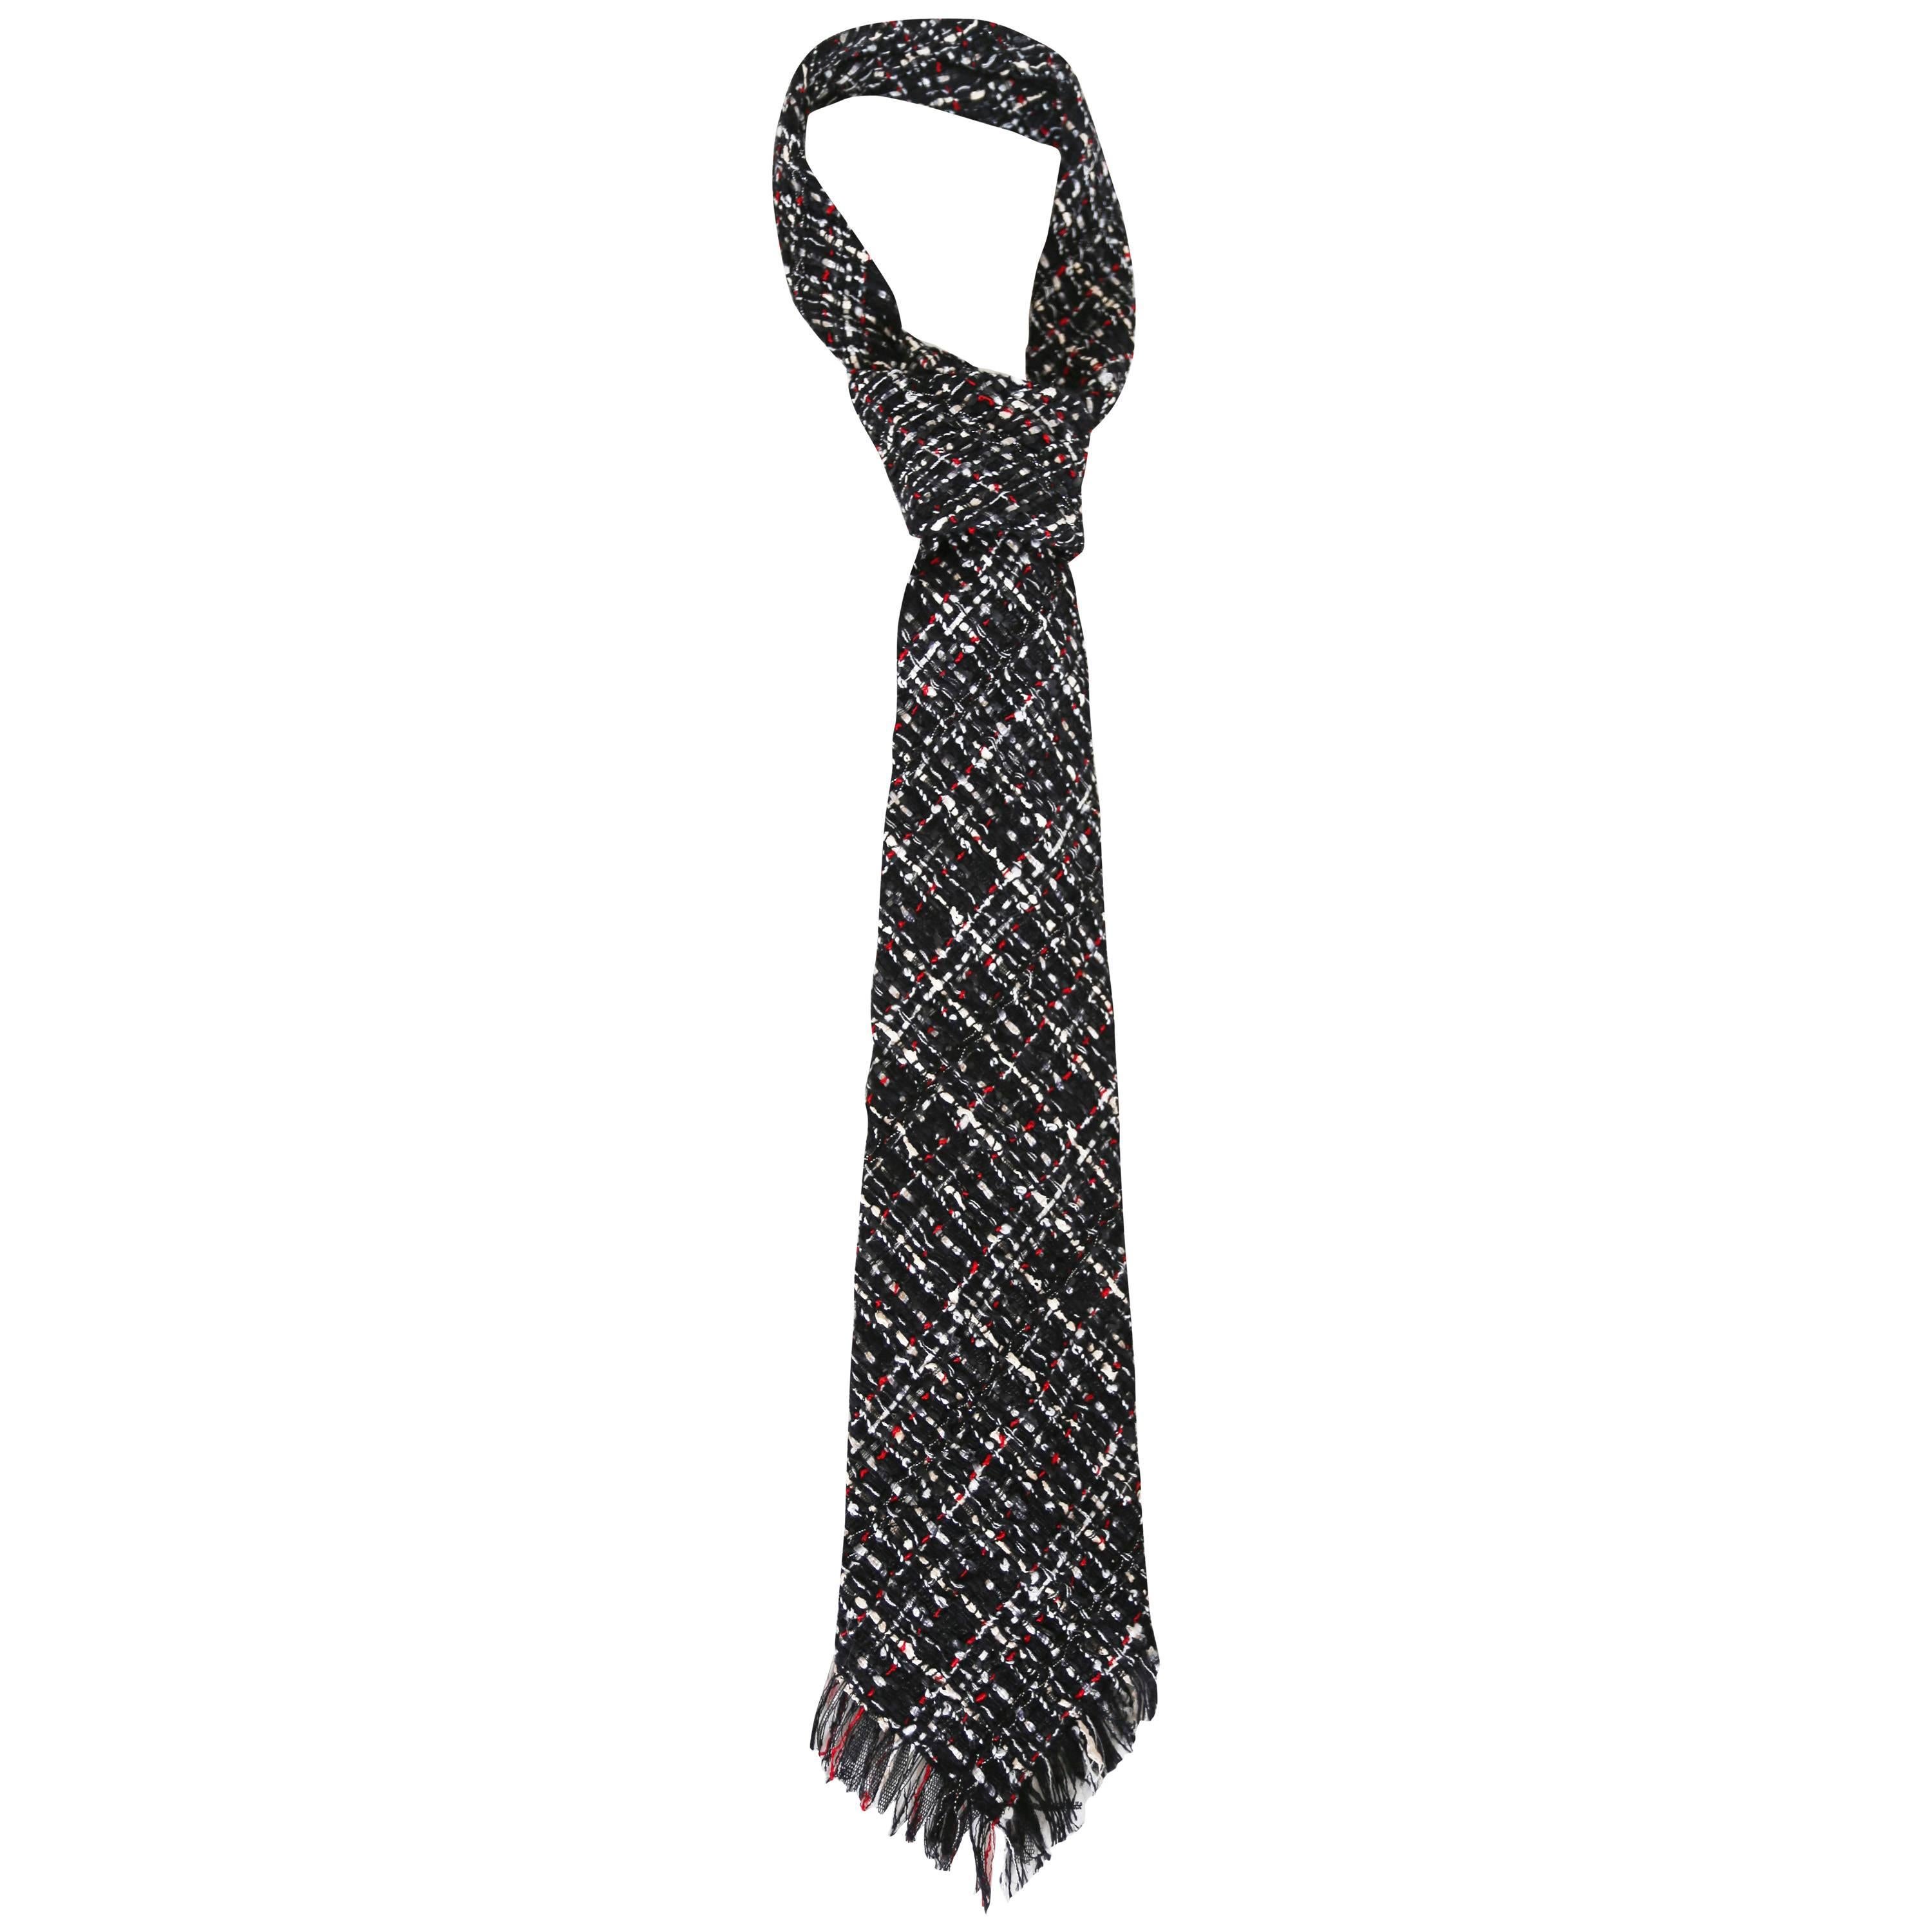 Chanel extra long fantasy tweed tie, c. 2005